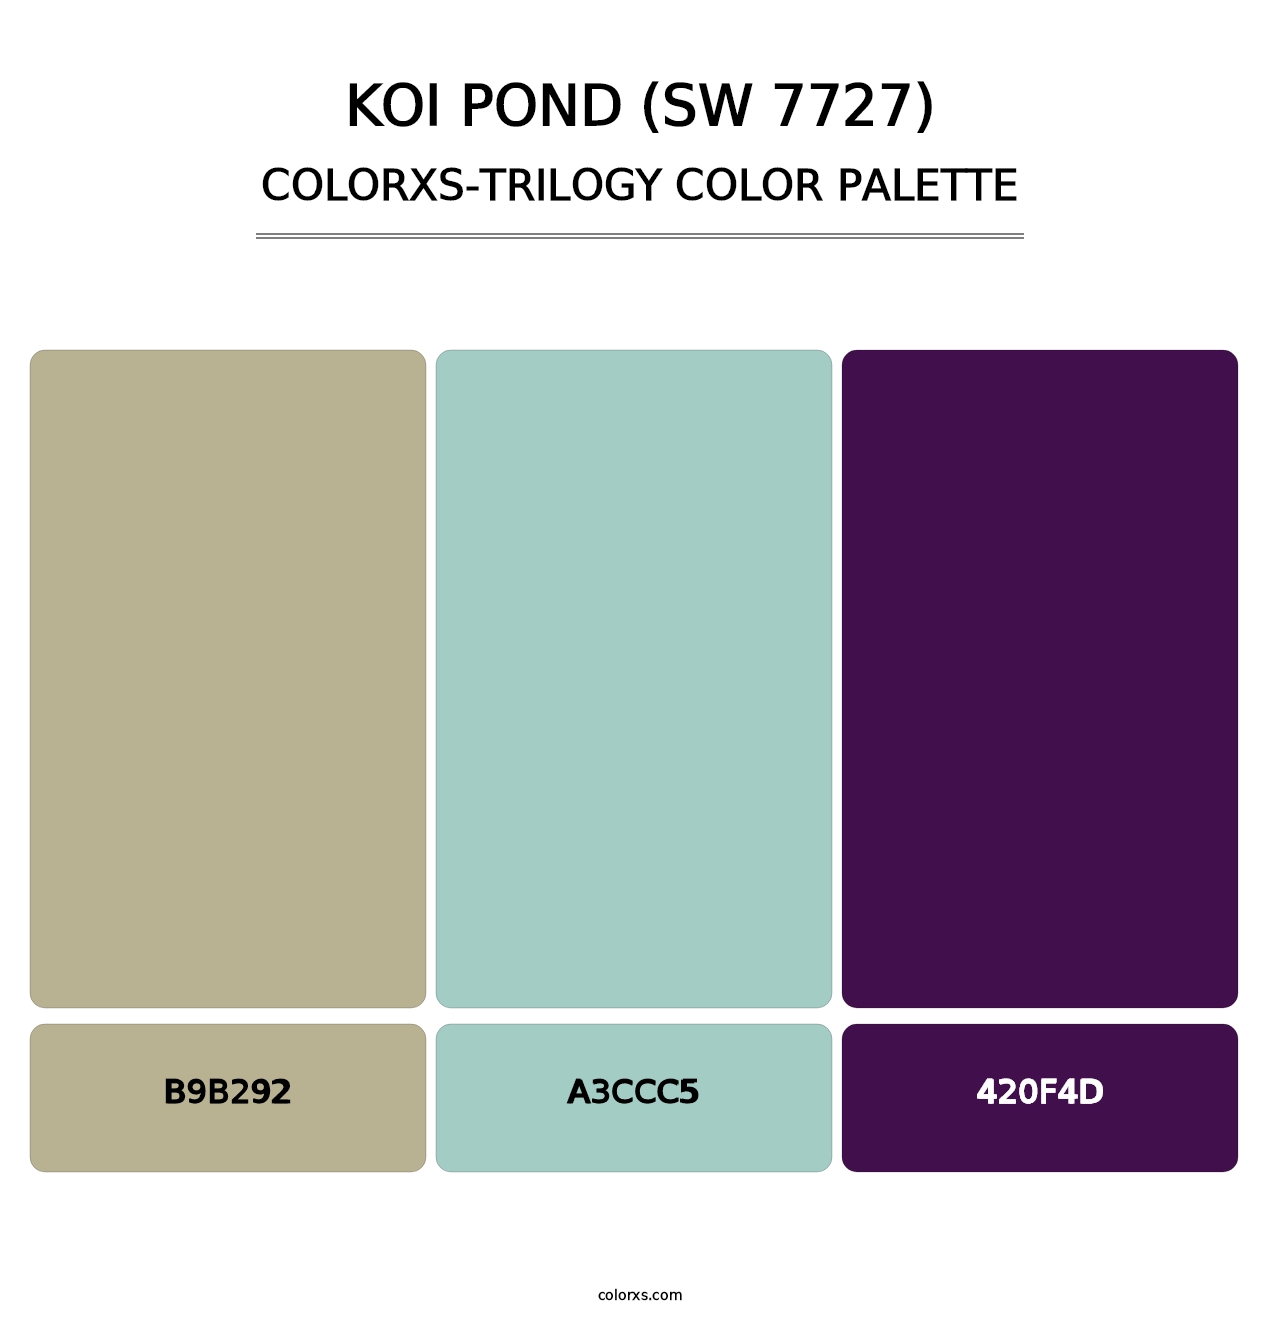 Koi Pond (SW 7727) - Colorxs Trilogy Palette